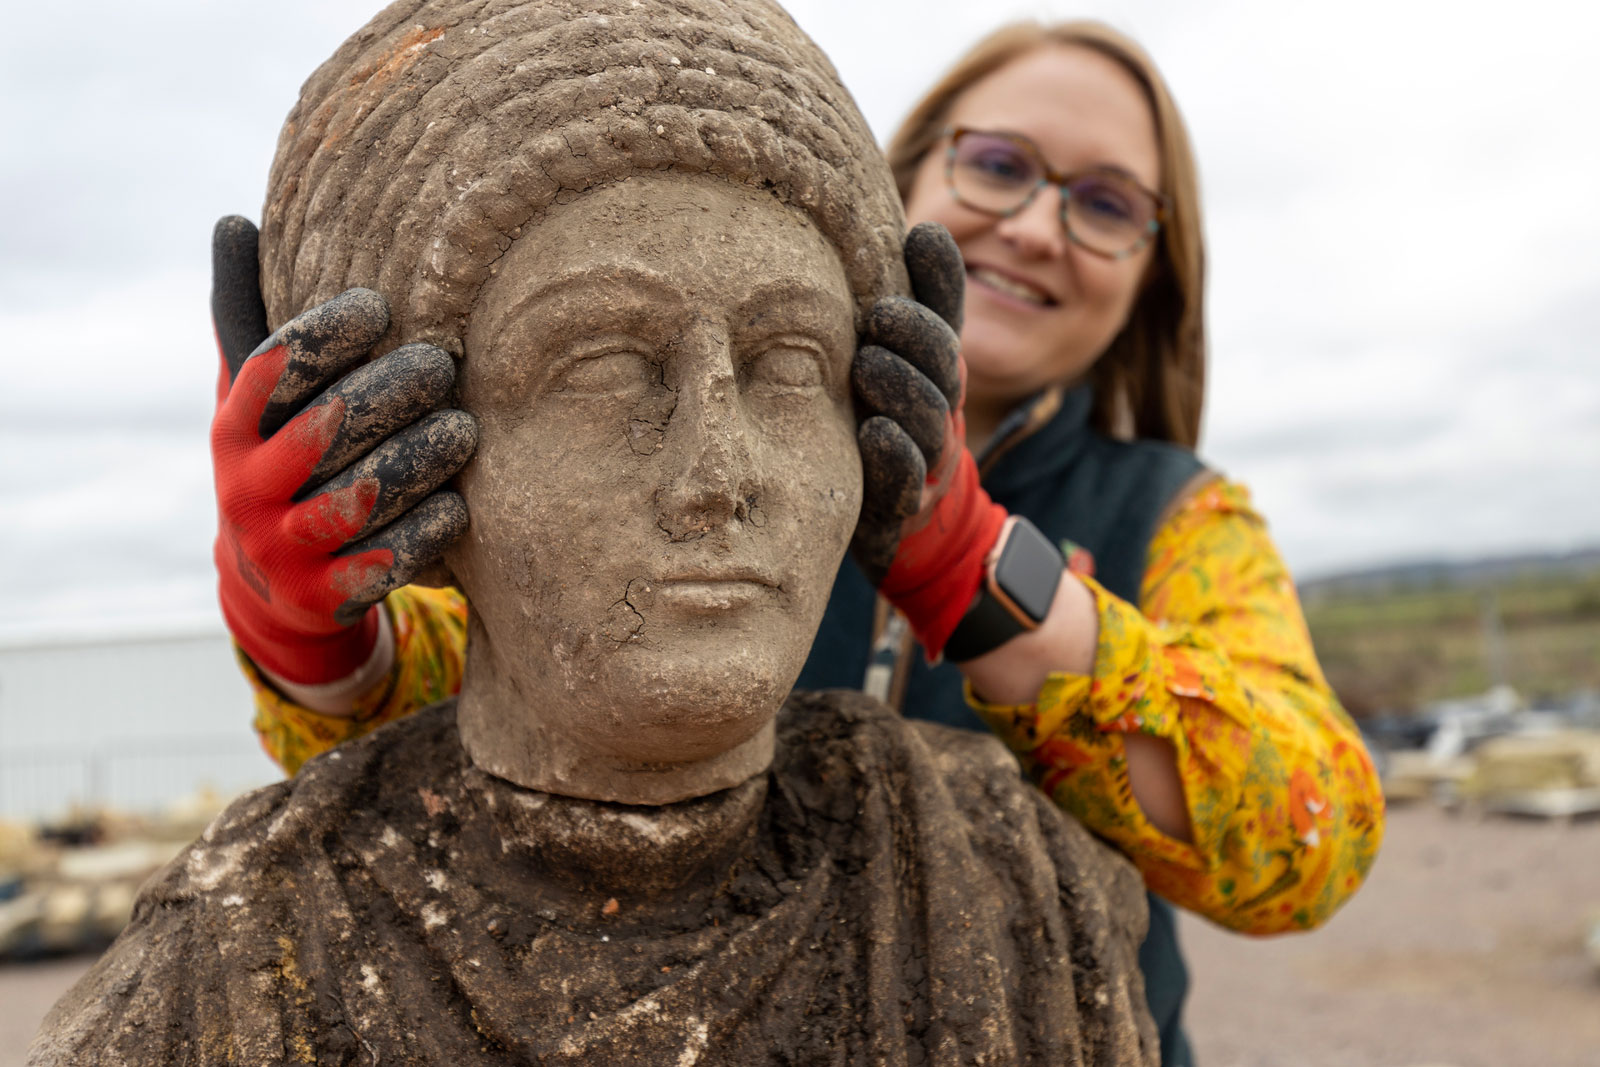 Inghilterra, trovate statue romane nello scavo dell'Alta Velocità: ‘scoperta straordinaria’